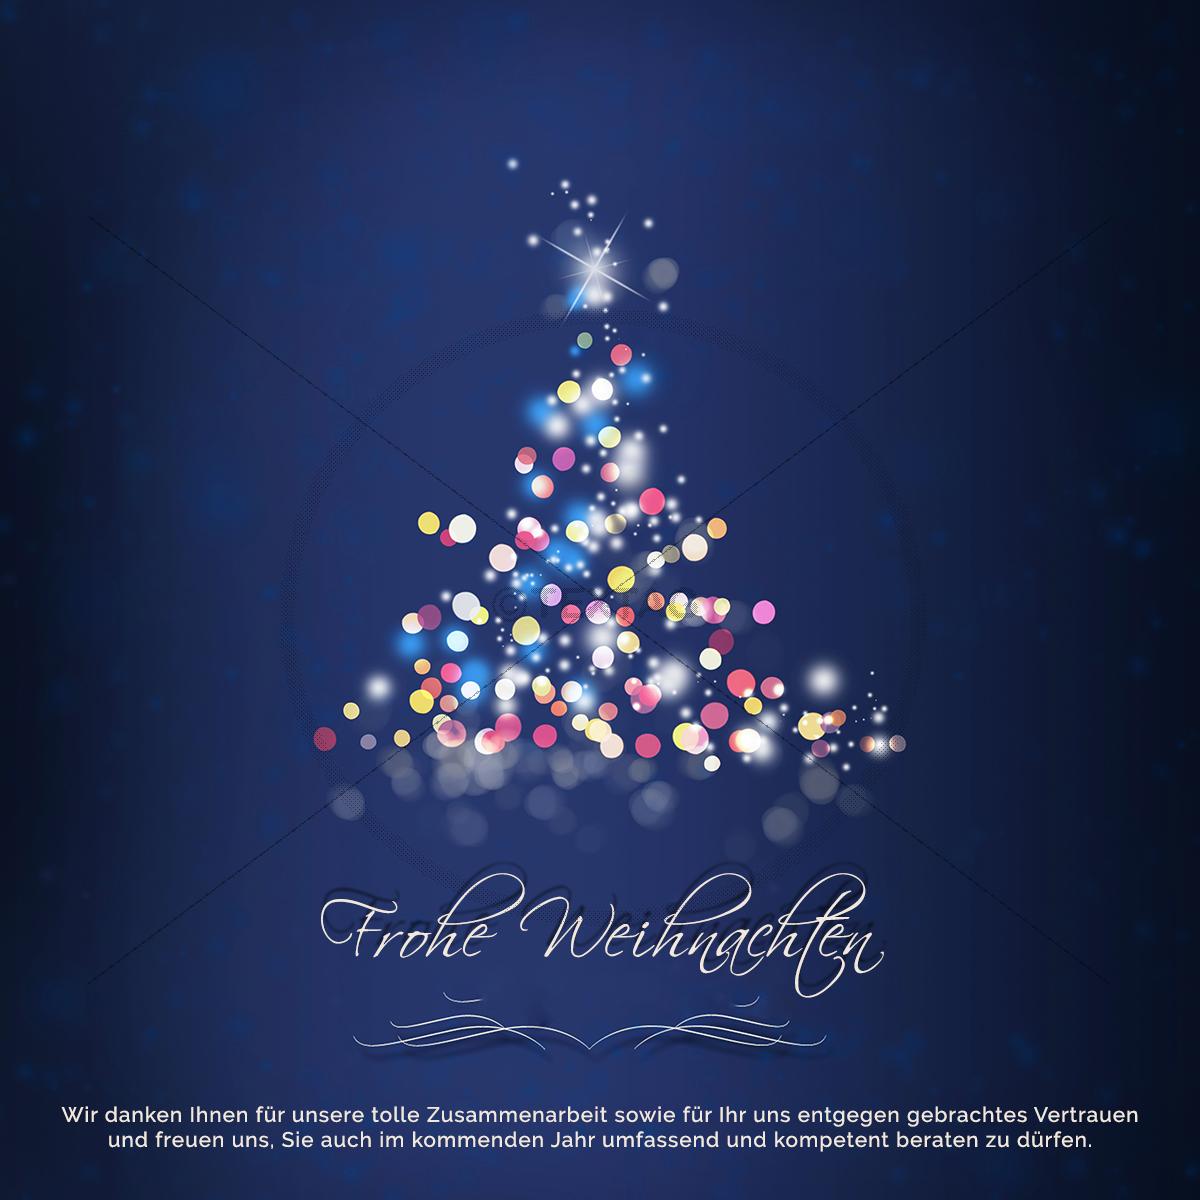 Weihnachts E Card Fur Firmen Mit Spruch Und Weihnachtsbaum In Blau